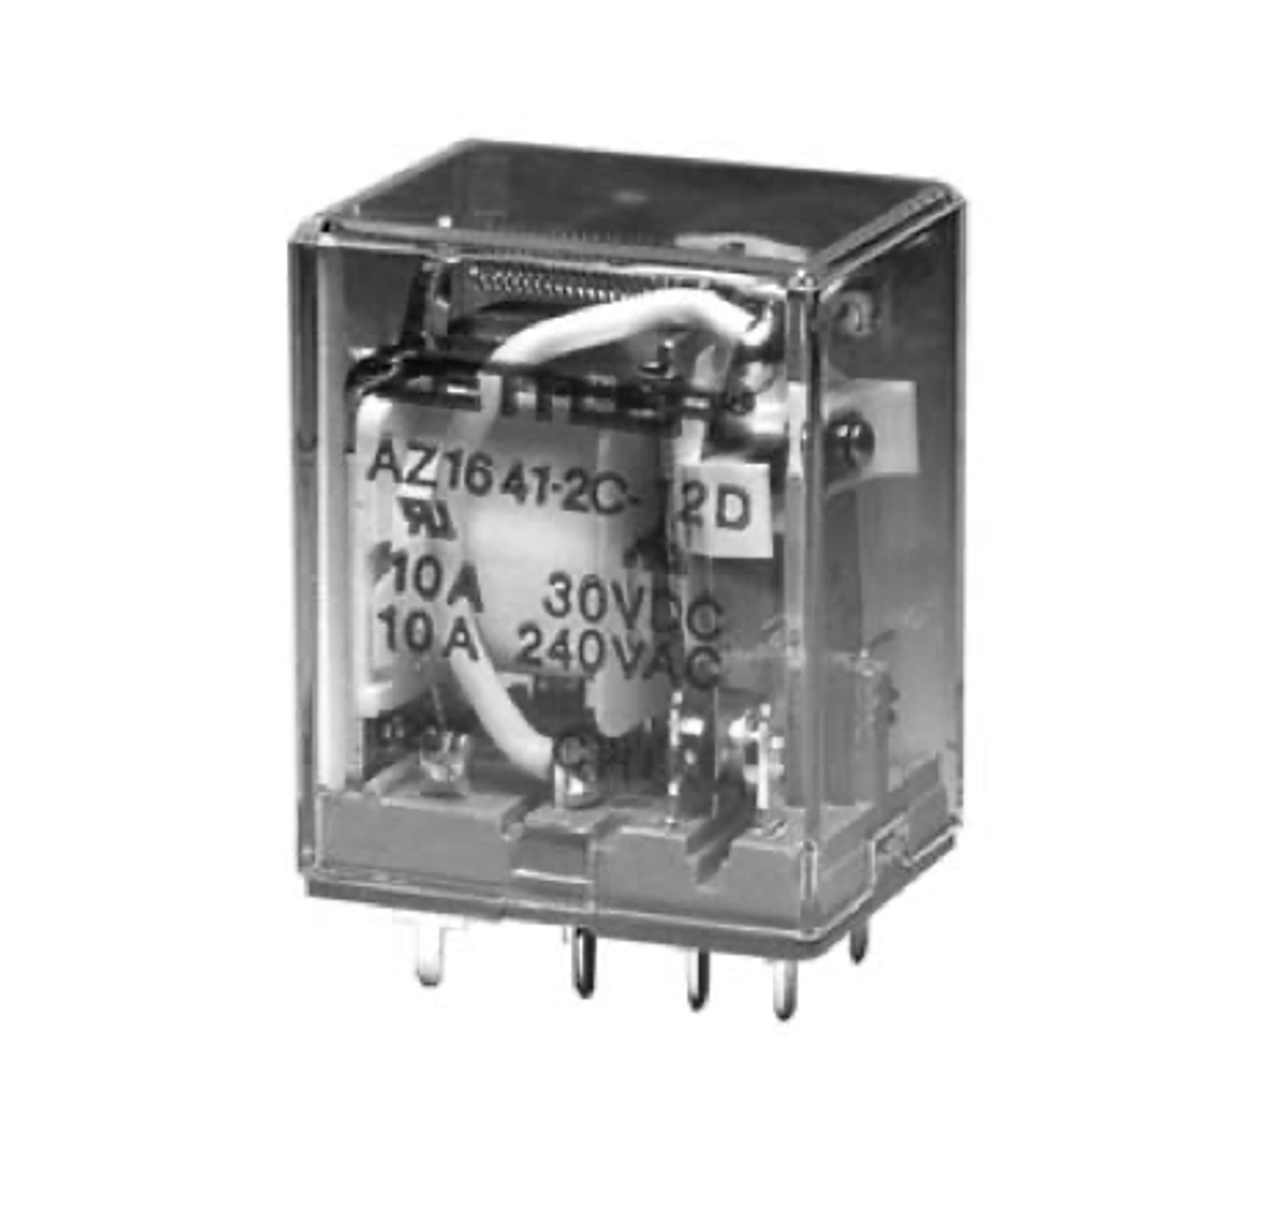 American Zettler AZ1641-2CT-48A Power Relay